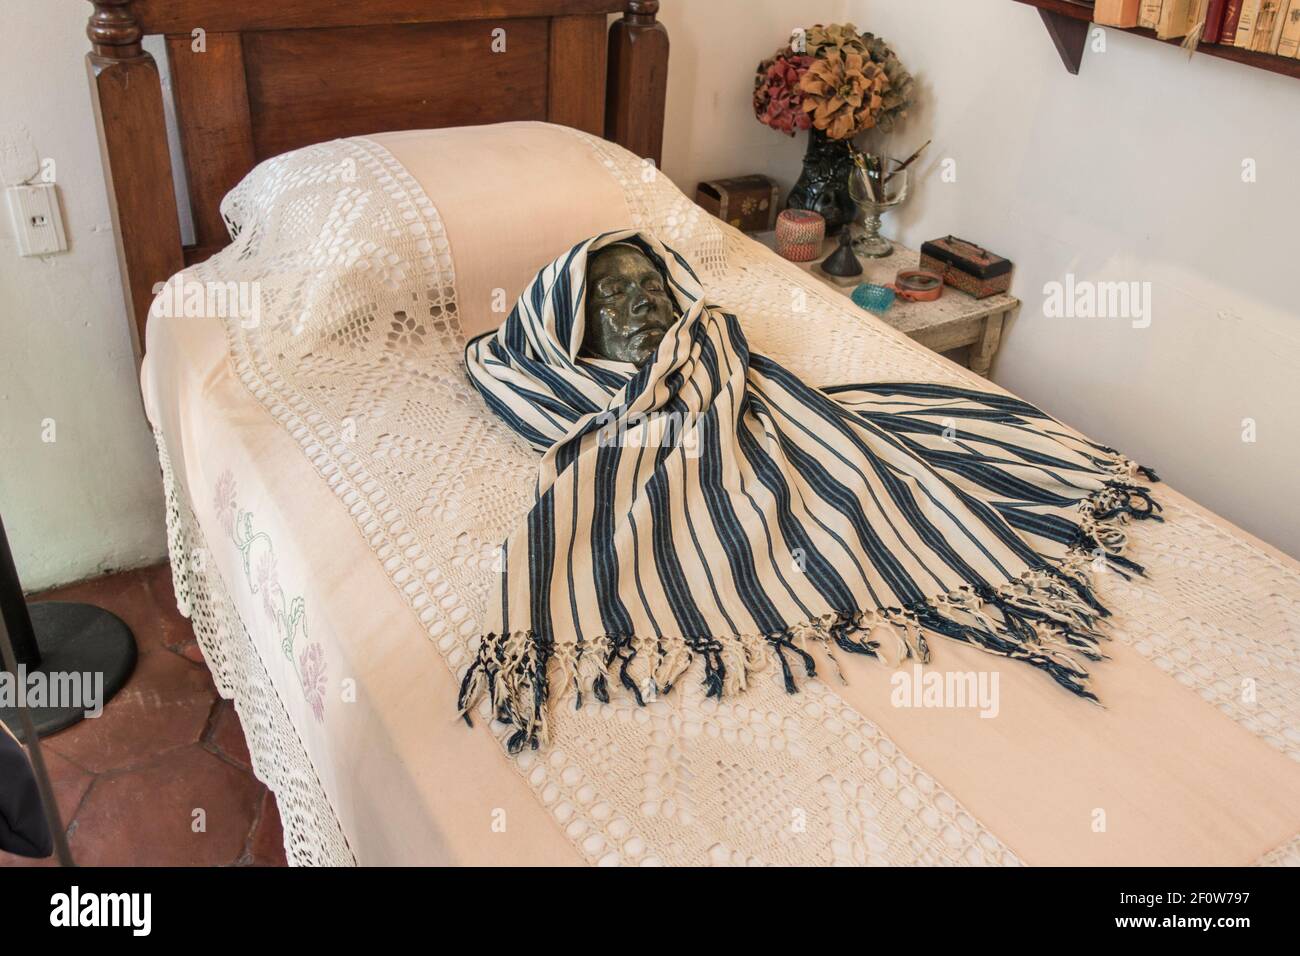 La maschera di morte di Frida Kahlo sul suo letto nella Casa Azul (Casa Blu) Coyoacan, Città del Messico, Messico Foto Stock